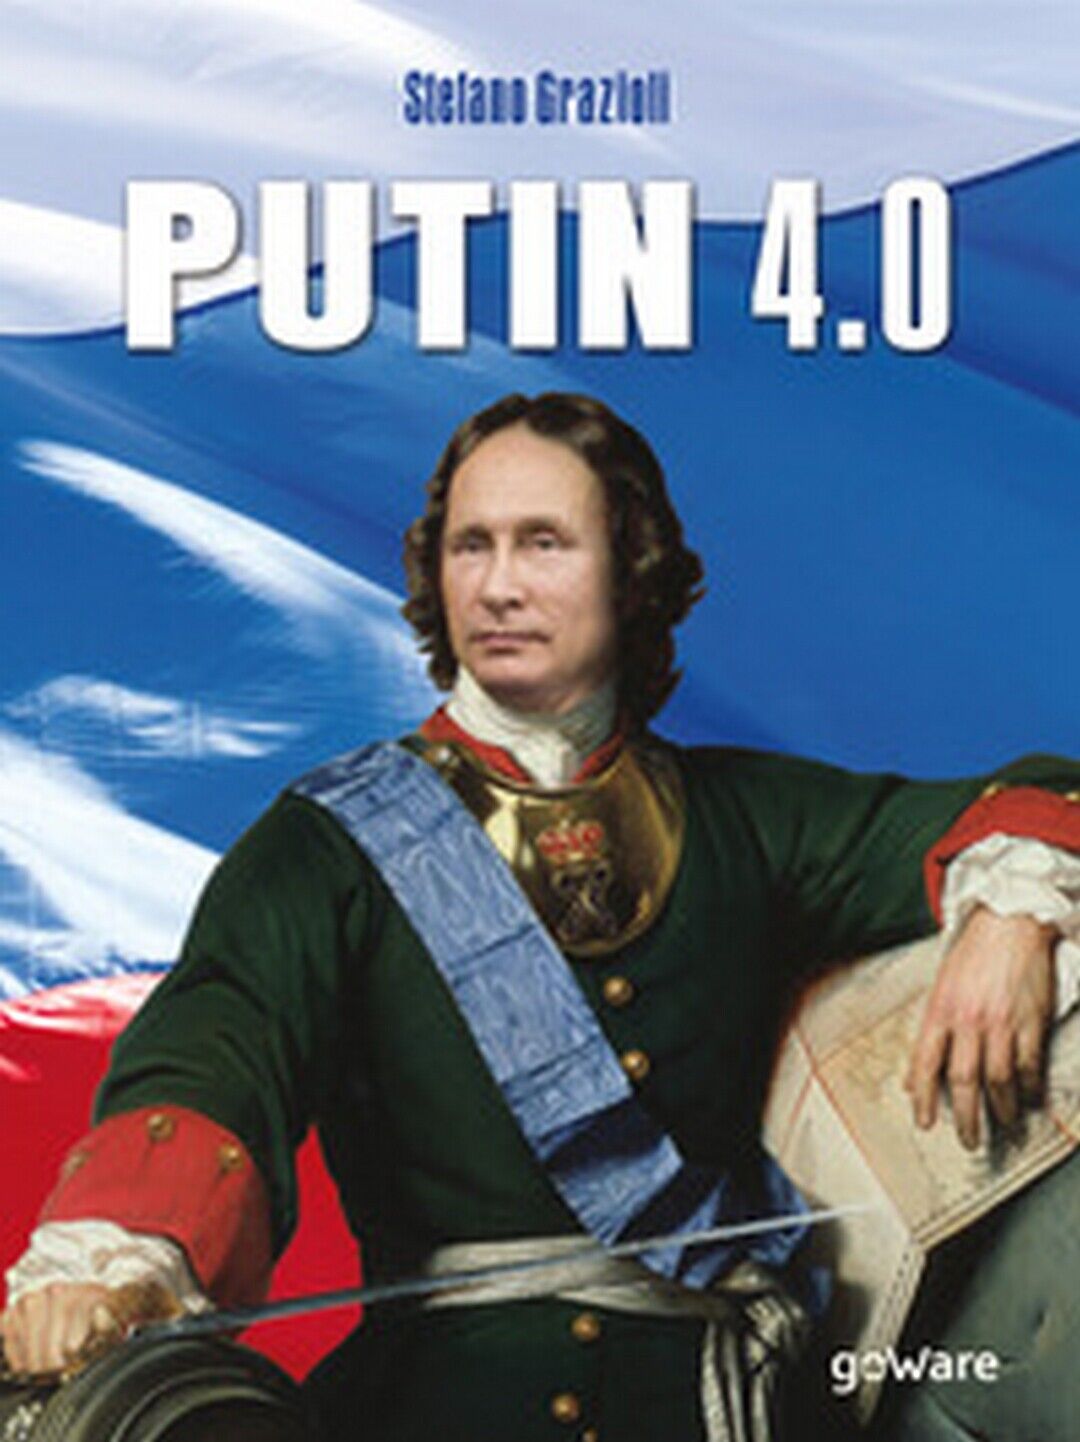 Putin 4.0  - Stefano Grazioli,  2018,  Goware libro usato